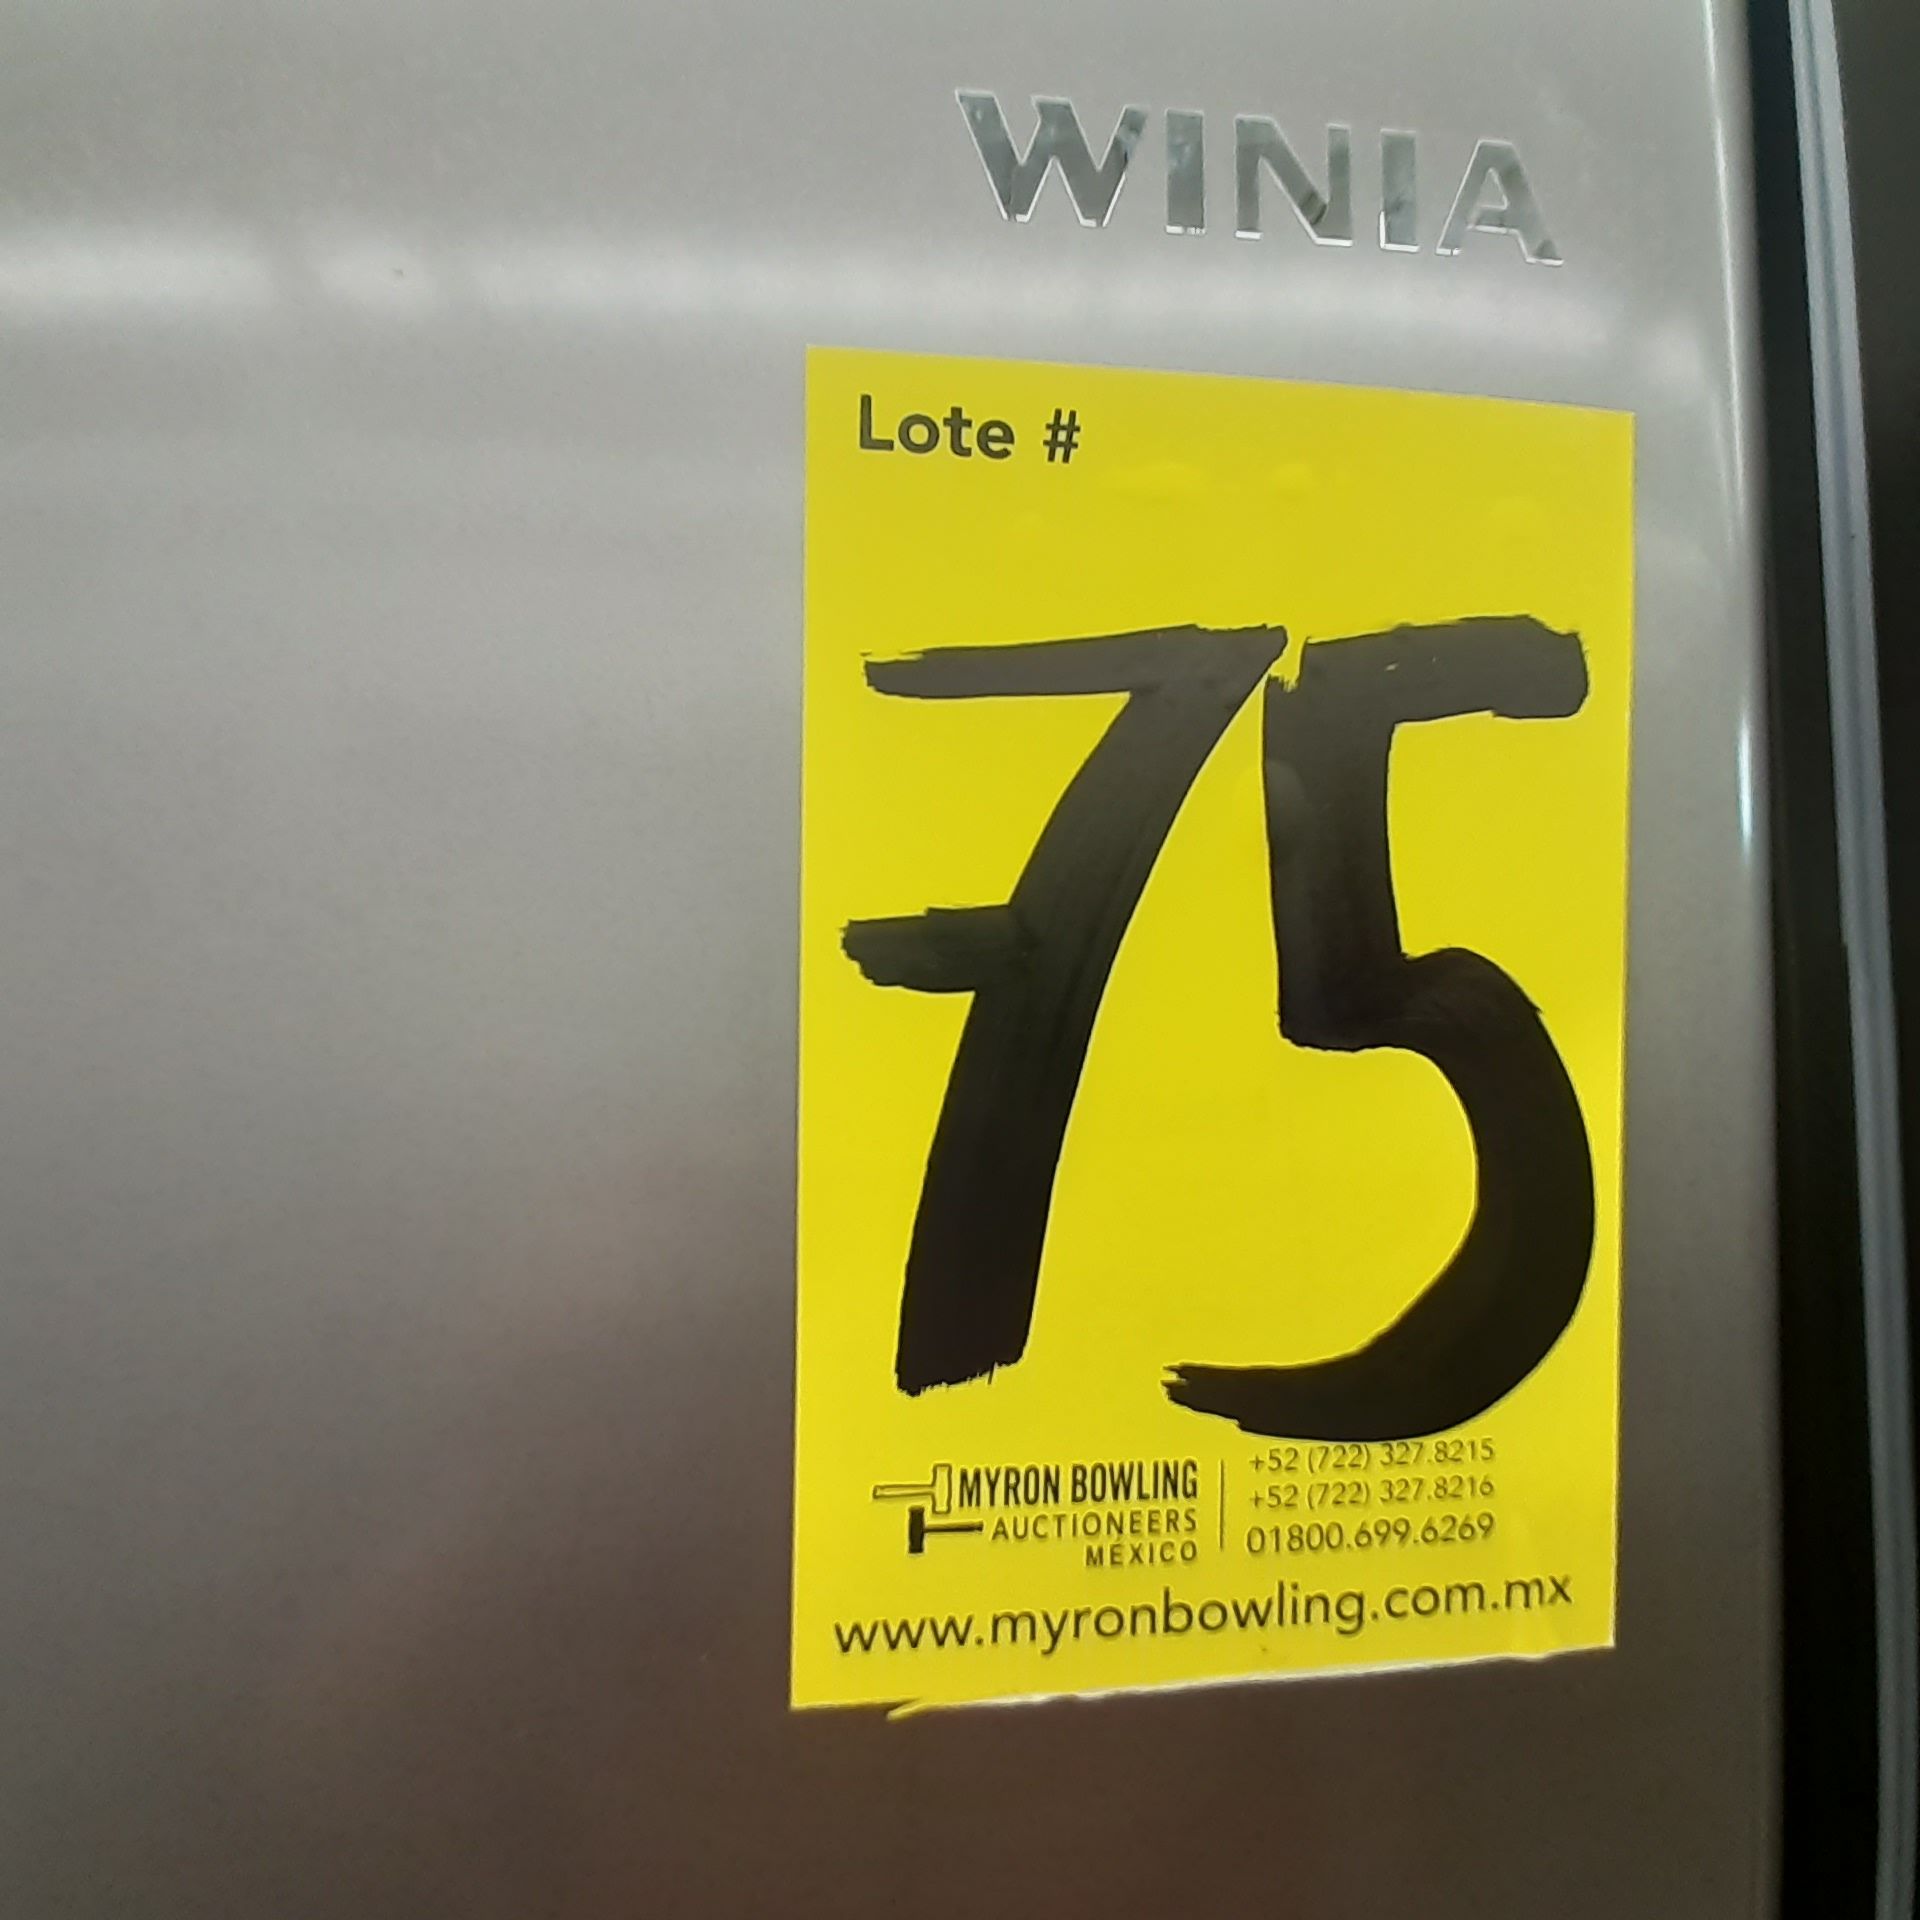 Lote De 2 Refrigeradores: 1 Refrigerador Marca Mabe, 1 Refrigerador Marca Winia, Distintos Modelos - Image 23 of 23